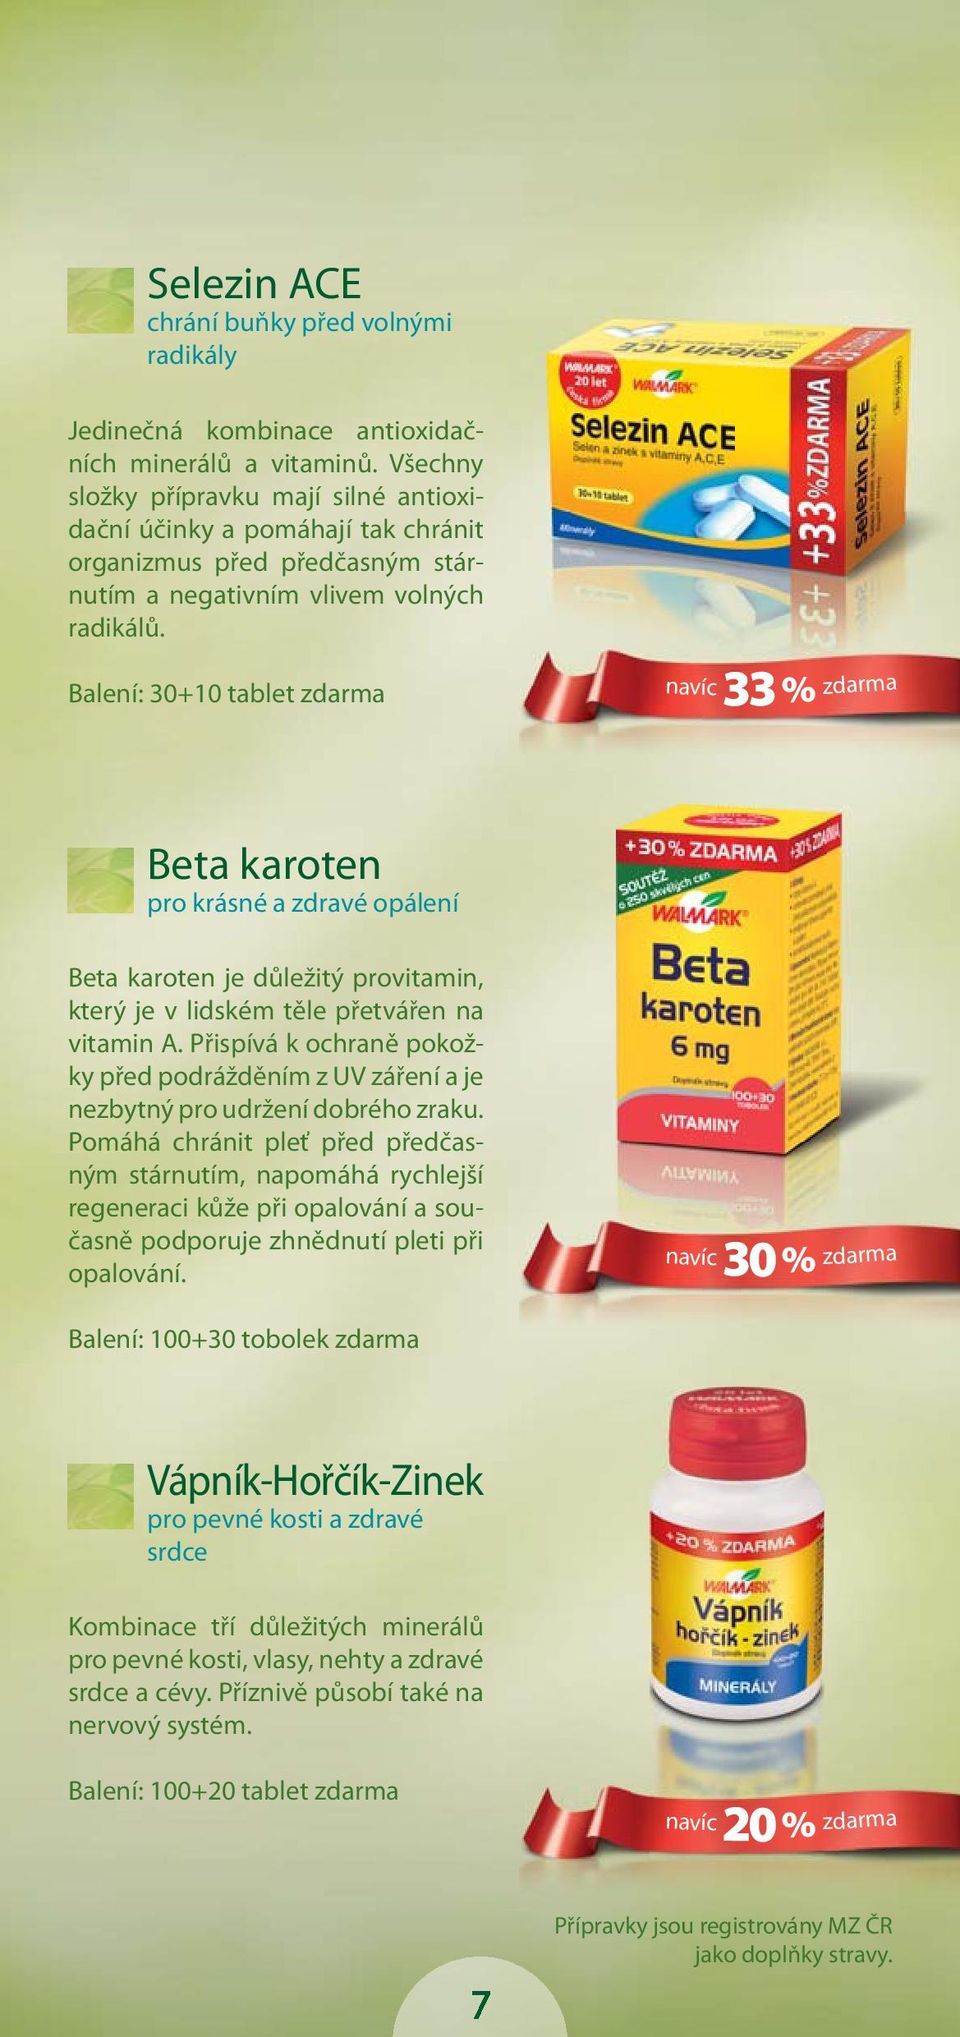 Balení: 30+10 tablet zdarma navíc 33 % zdarma Beta karoten pro krásné a zdravé opálení Beta karoten je důležitý provitamin, který je v lidském těle přetvářen na vitamin A.